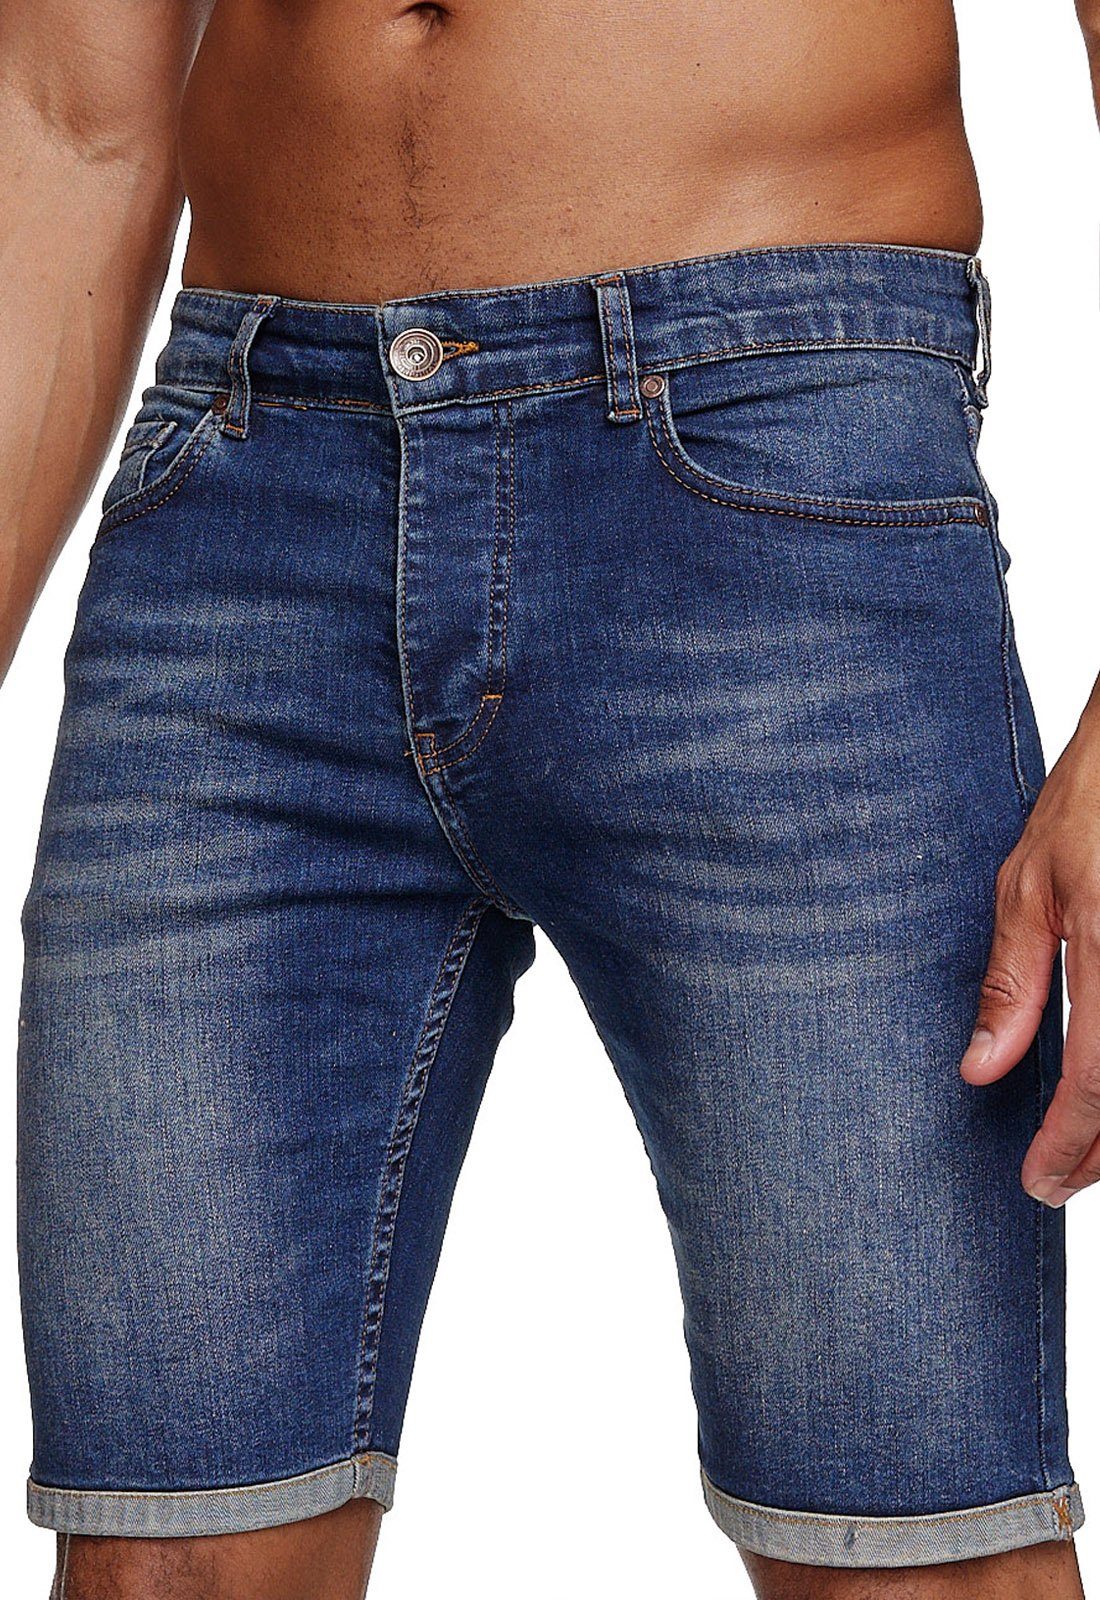 Reslad Jeansshorts »Reslad Jeans Shorts Herren Kurze Hosen Sommer l« Denim  Jeansbermudas Stretch Jeans-Hose online kaufen | OTTO